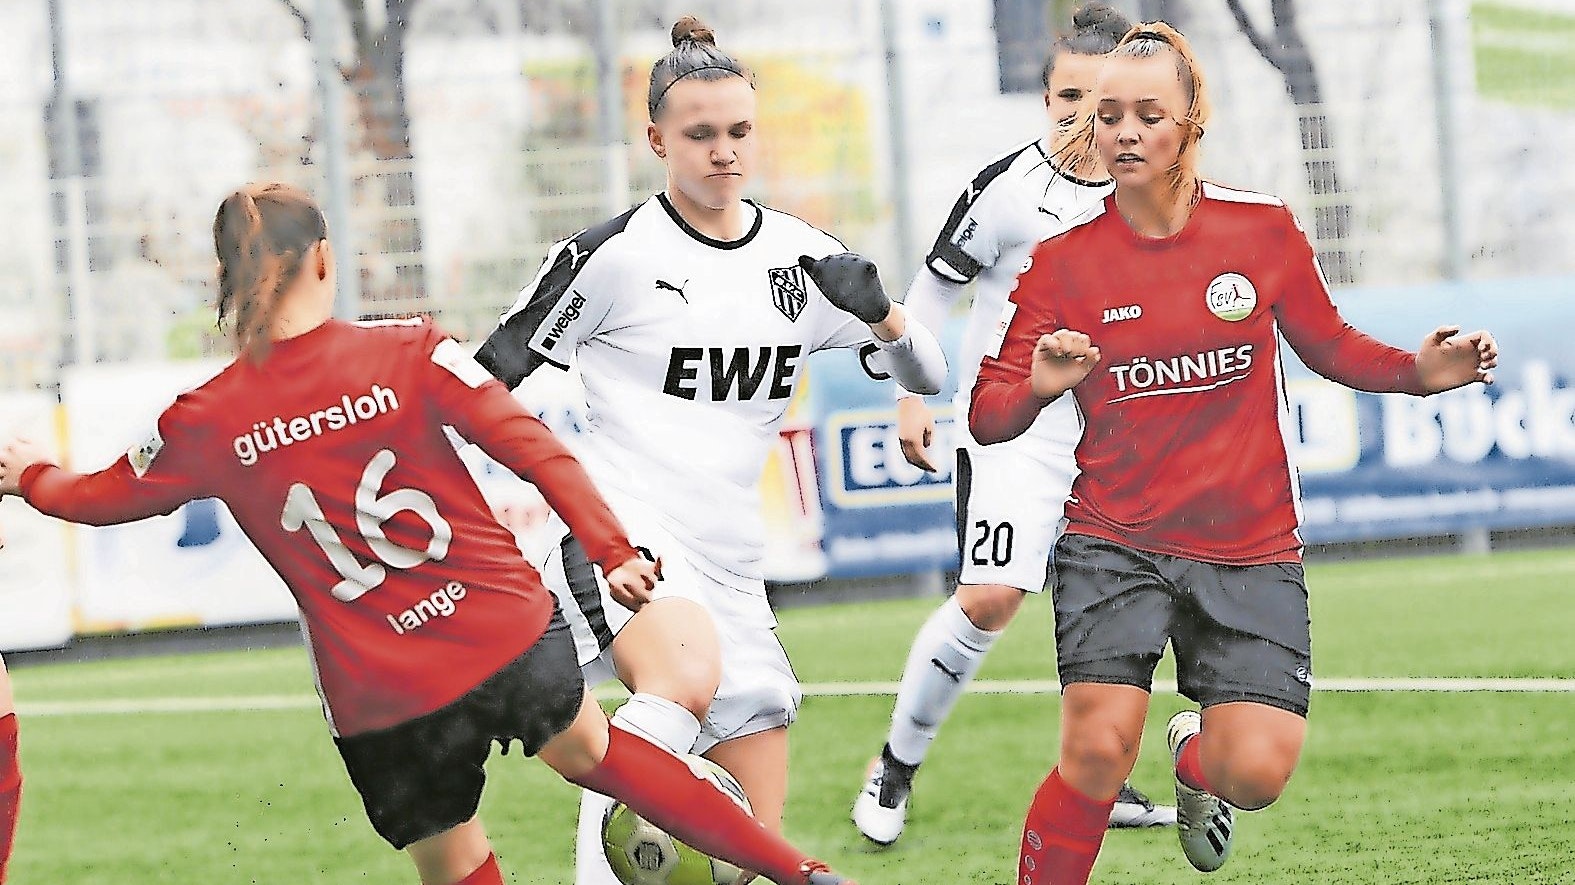 Guter Auftakt: Nadine Anstatt (in Weiß) und Nora Clausen (im Hintergrund, halb verdeckt) zogen mit ihrem neuen Verein, dem 1. FC Saarbrücken, in die zweite Runde des DFB-Pokals ein. Foto: Langosch